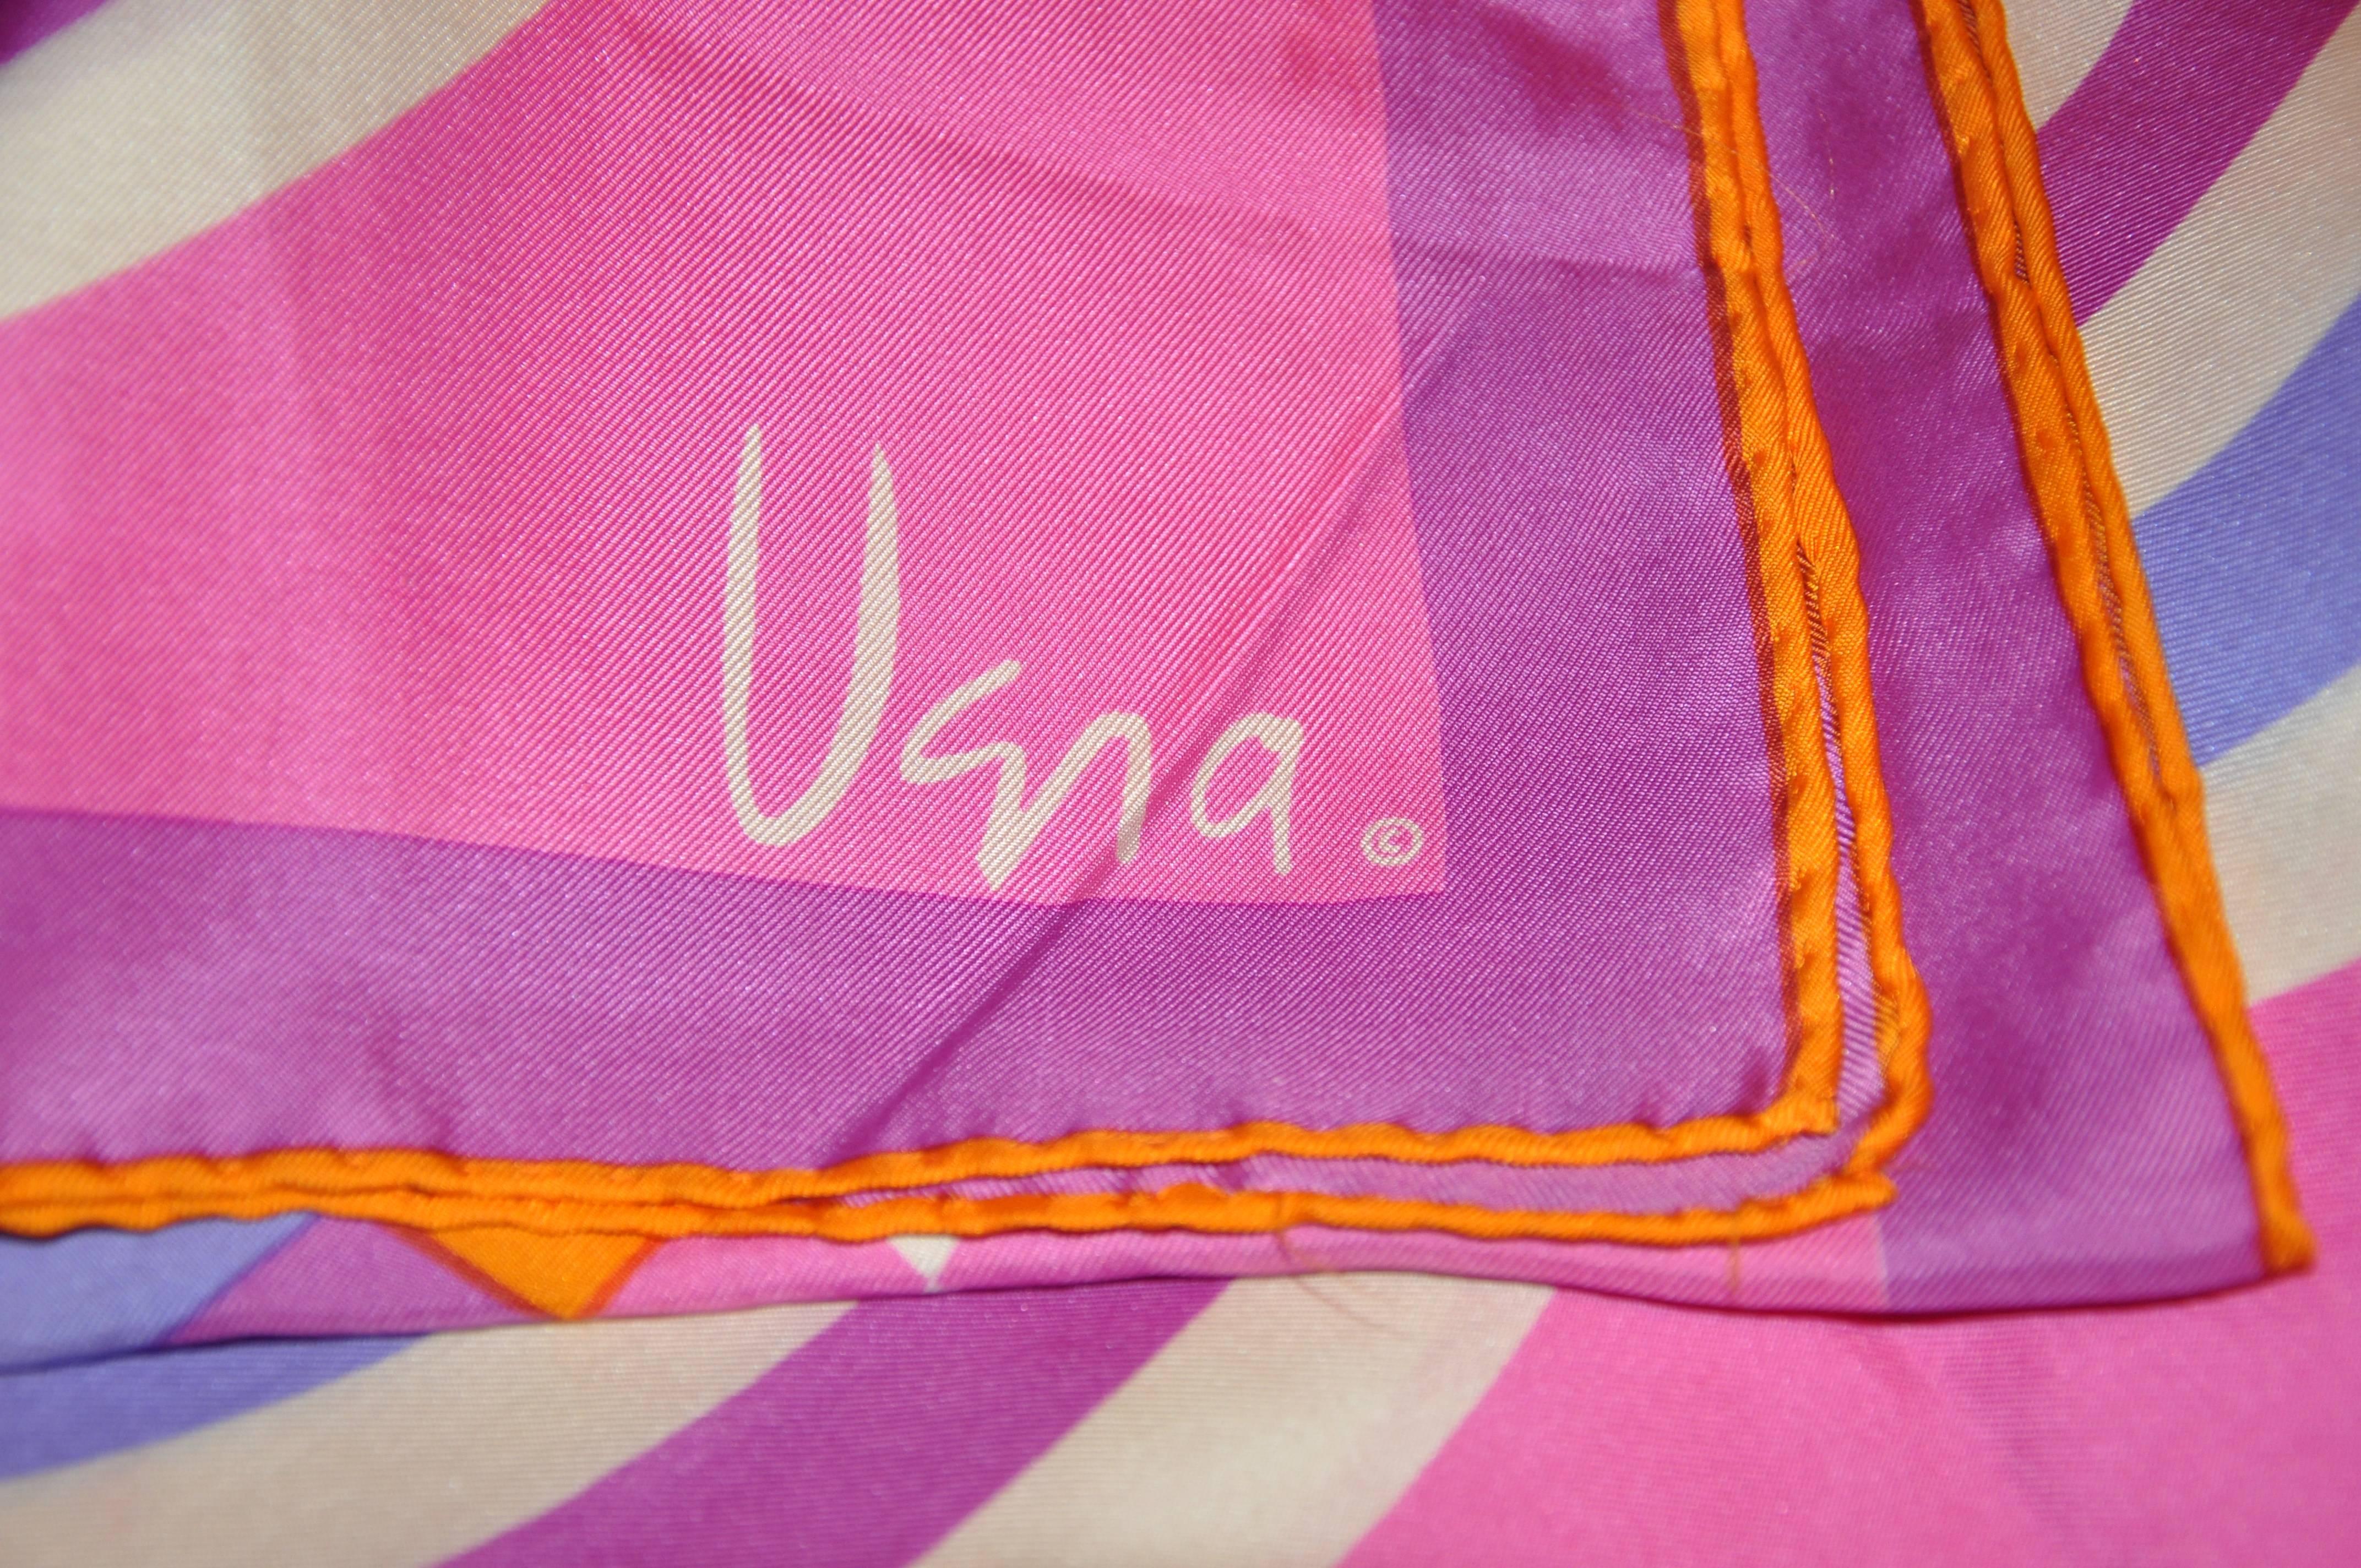           L'écharpe en soie abstraite fuchsia de Vera, merveilleusement audacieuse, lumineuse et colorée, mesure 15